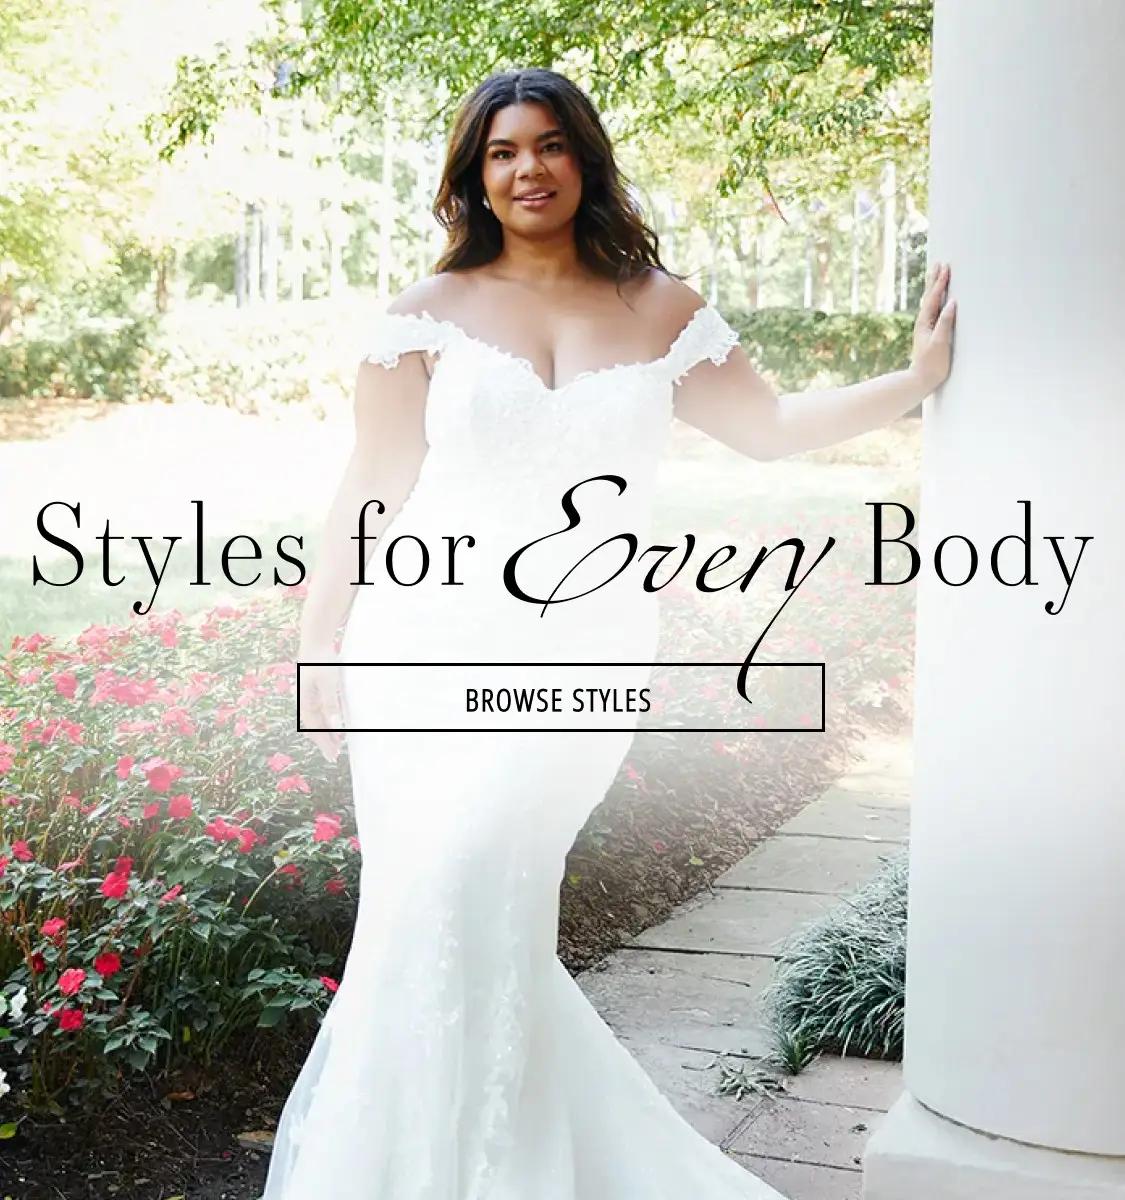 Couture Bridal, LLC - Wedding Dresses, Bridal Shop